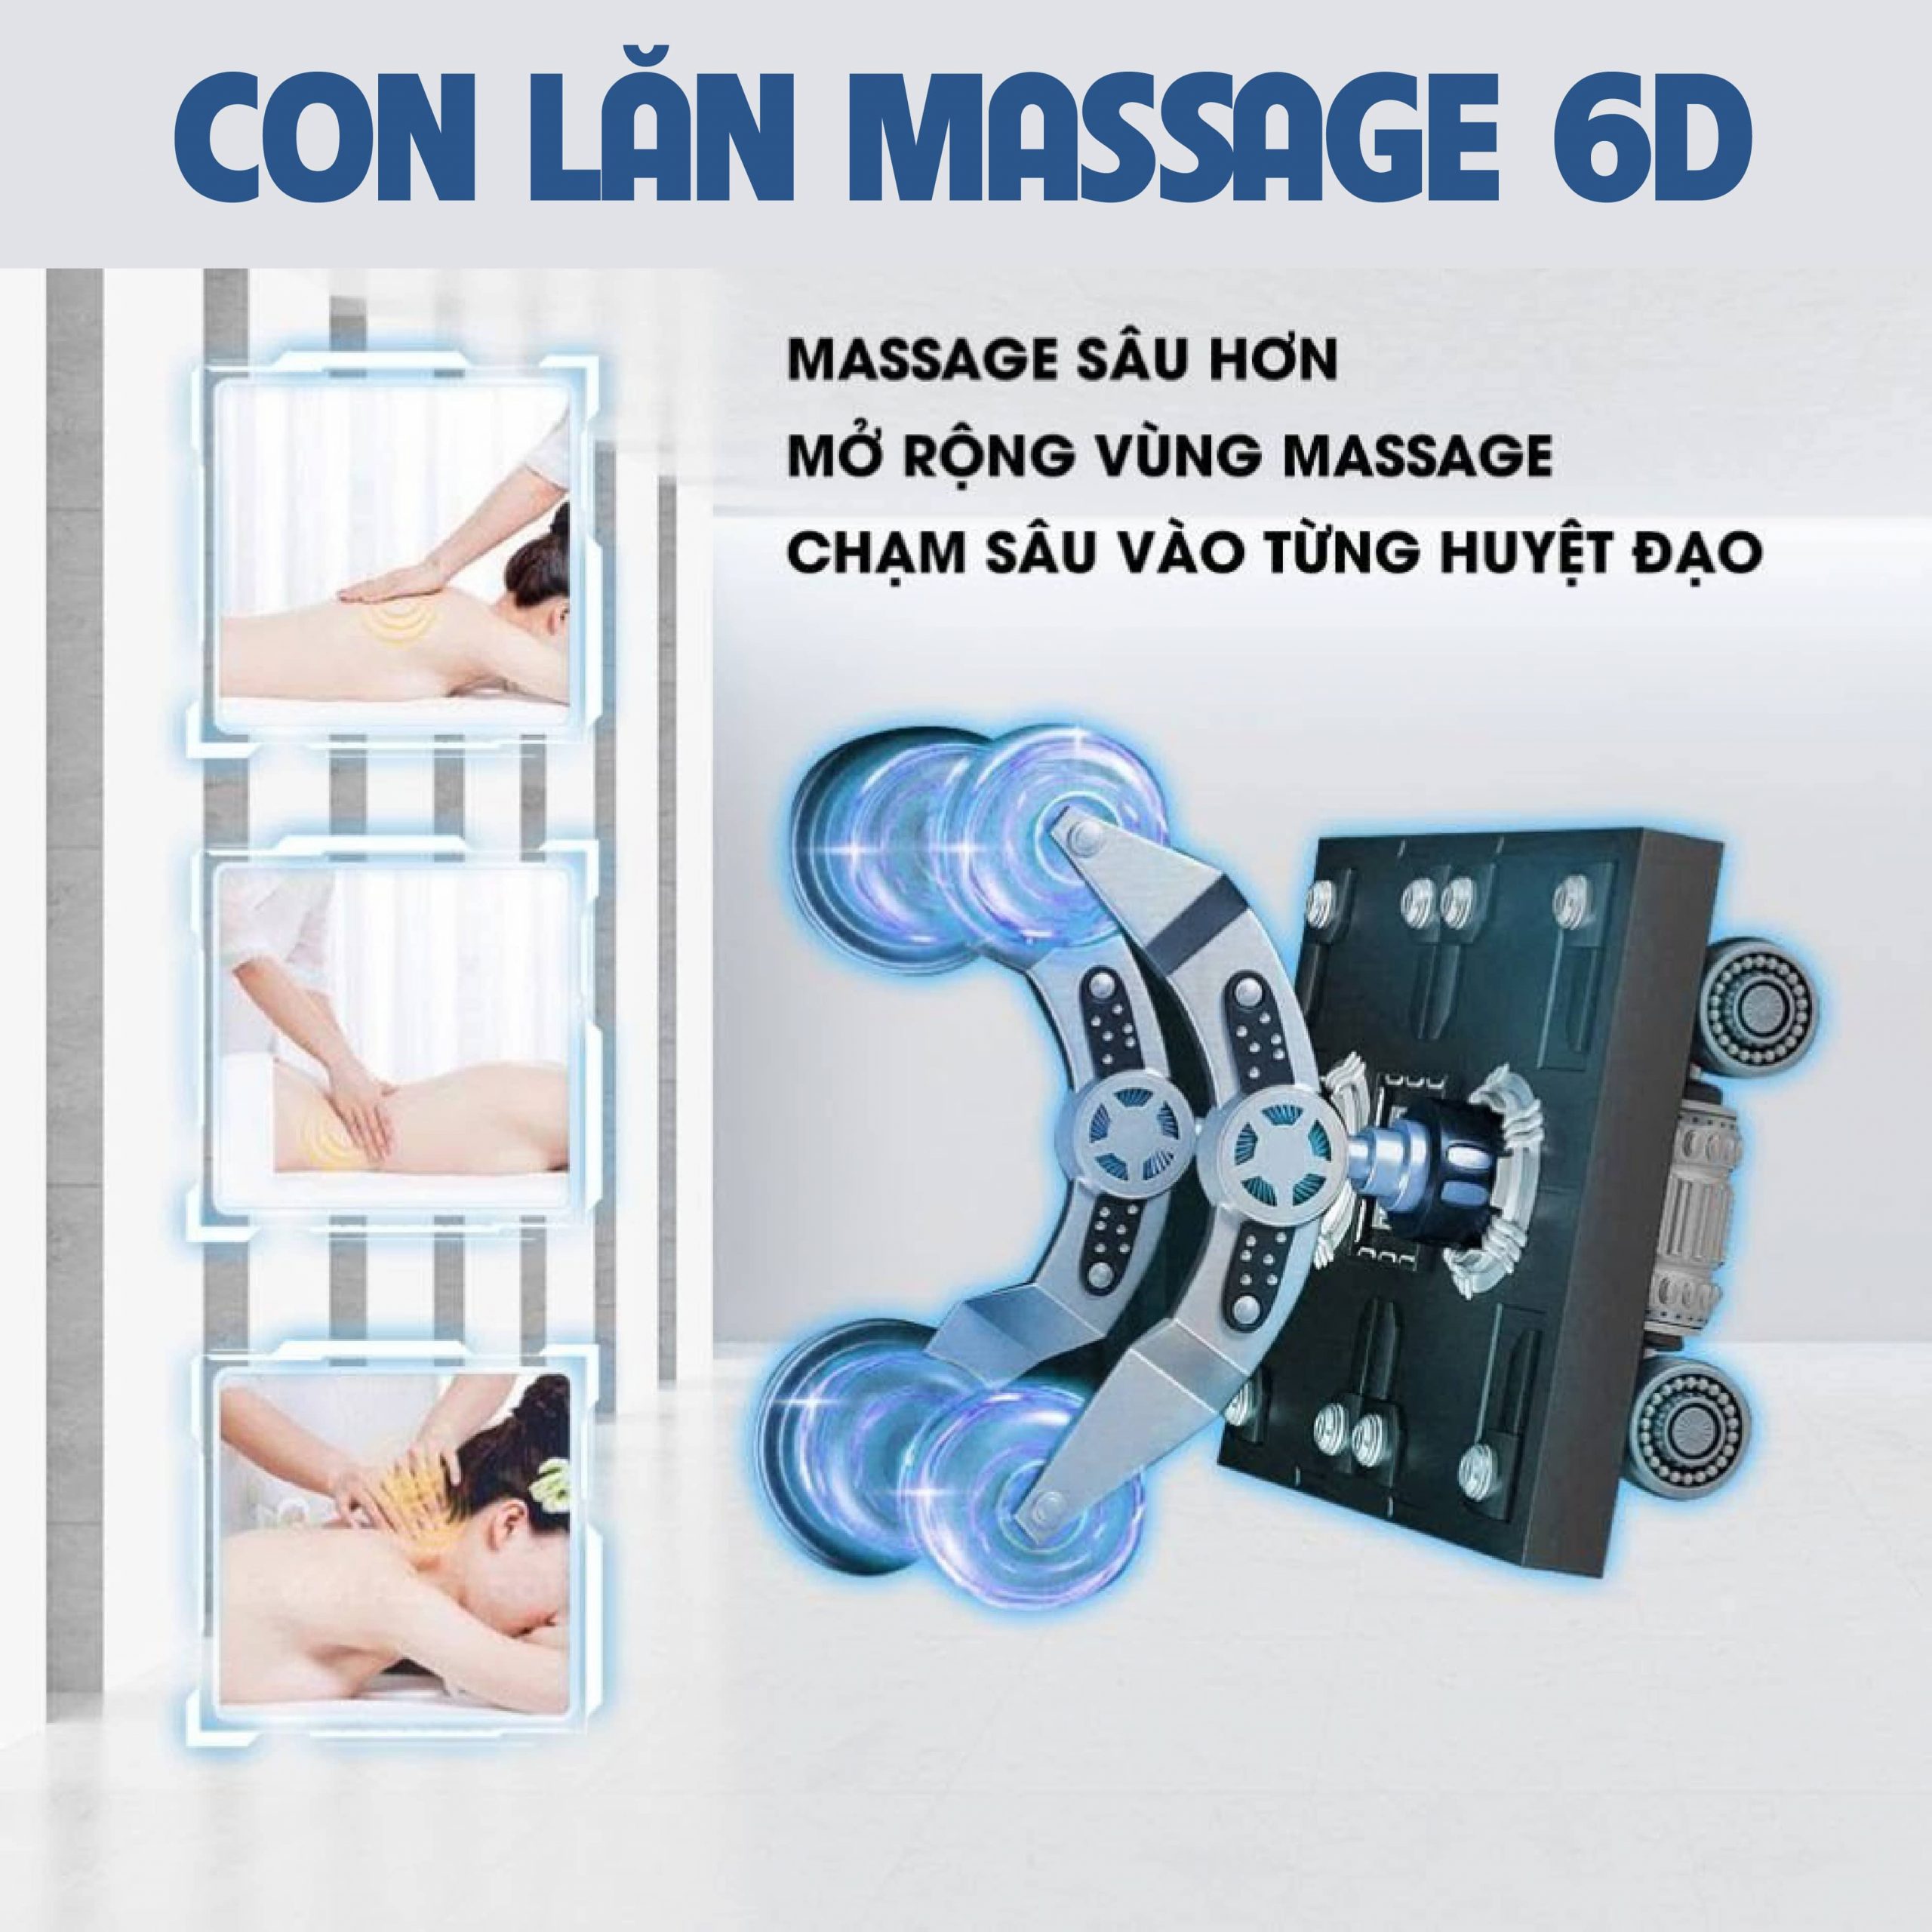 Con lăn massage 6D thế hệ mới giúp massage sâu hơn từng huyệt đạo